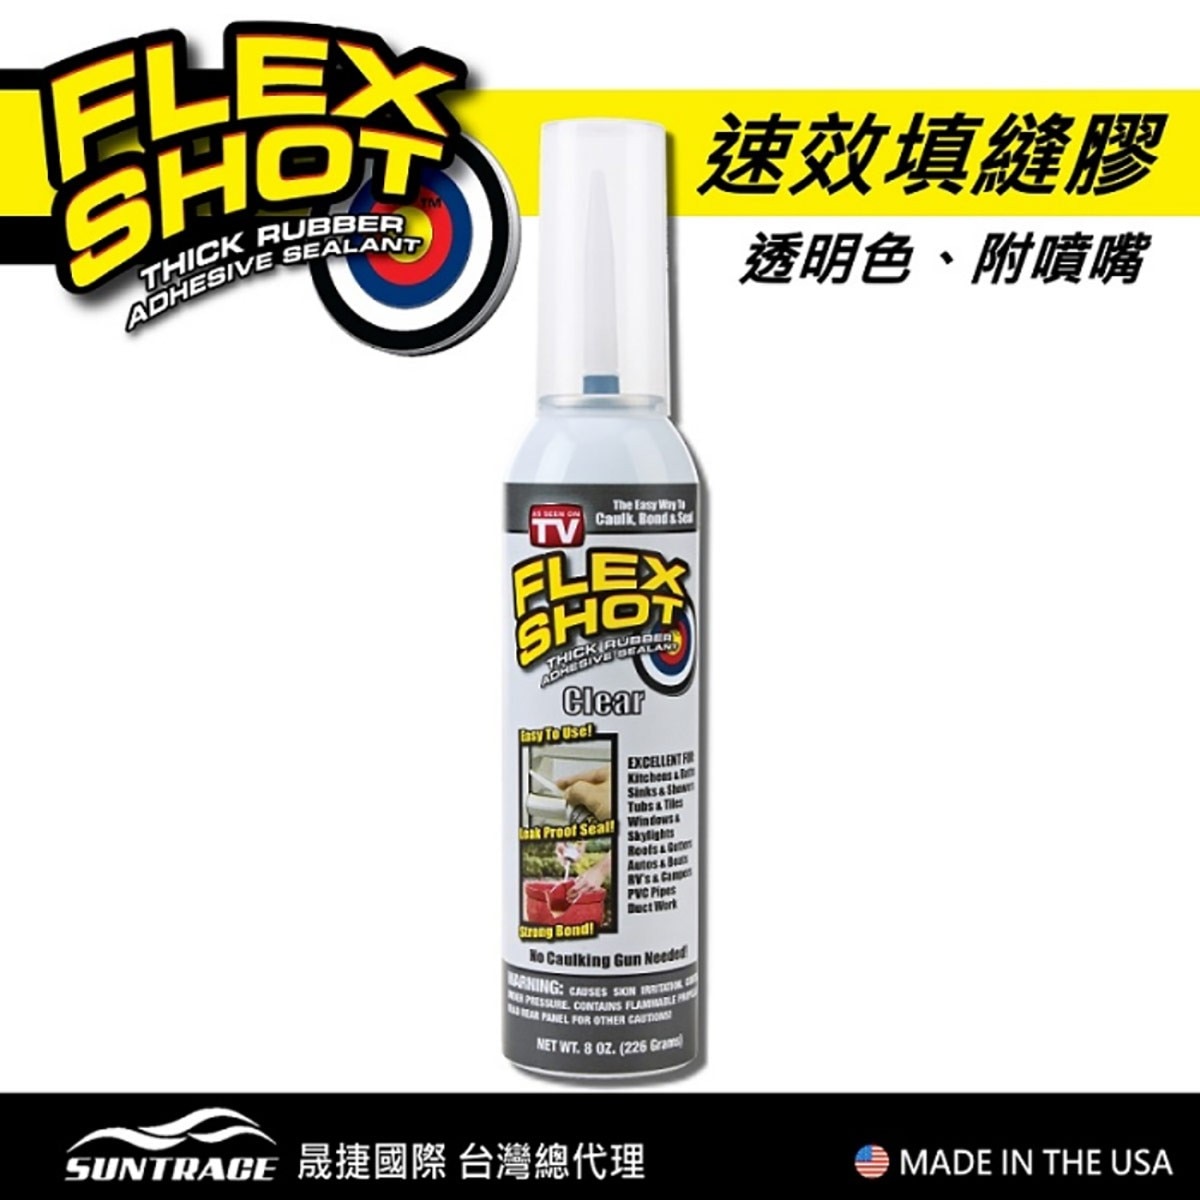 FLEX SHOT 速效填縫膠-透明色，美國製造，原裝進口。